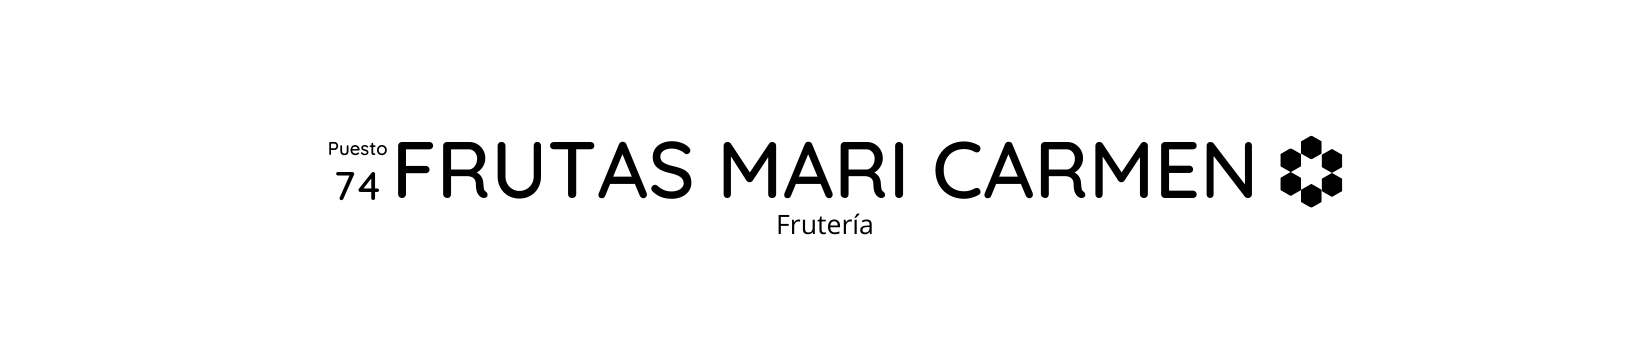 Mercado de Abastos - Frutas y Hortalizas Mari Carmen 74